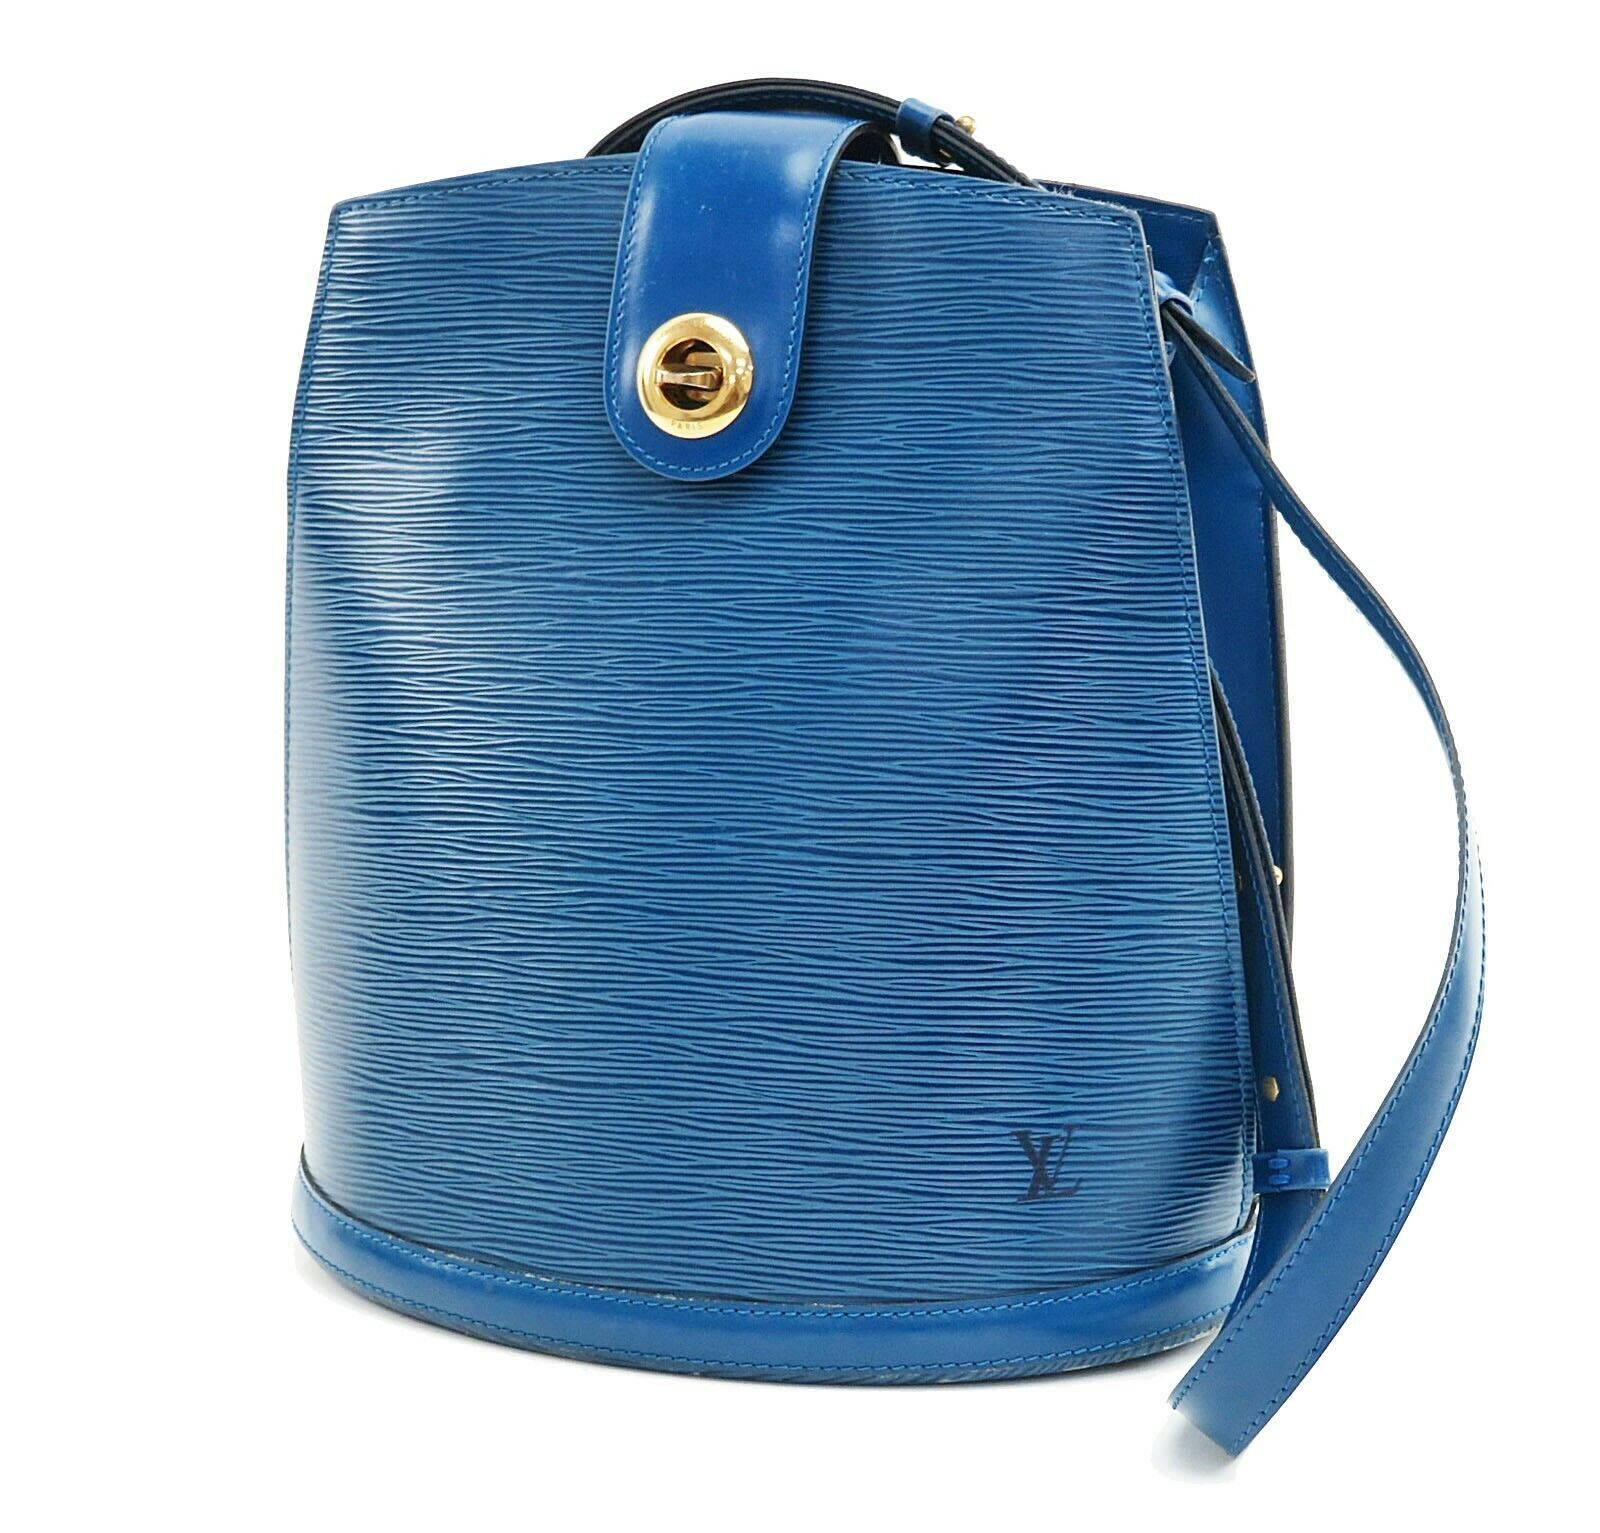 Authentic LOUIS VUITTON Cluny Blue Epi Leather Shoulder Bag Purse #35117 - Women&#39;s Bags & Handbags